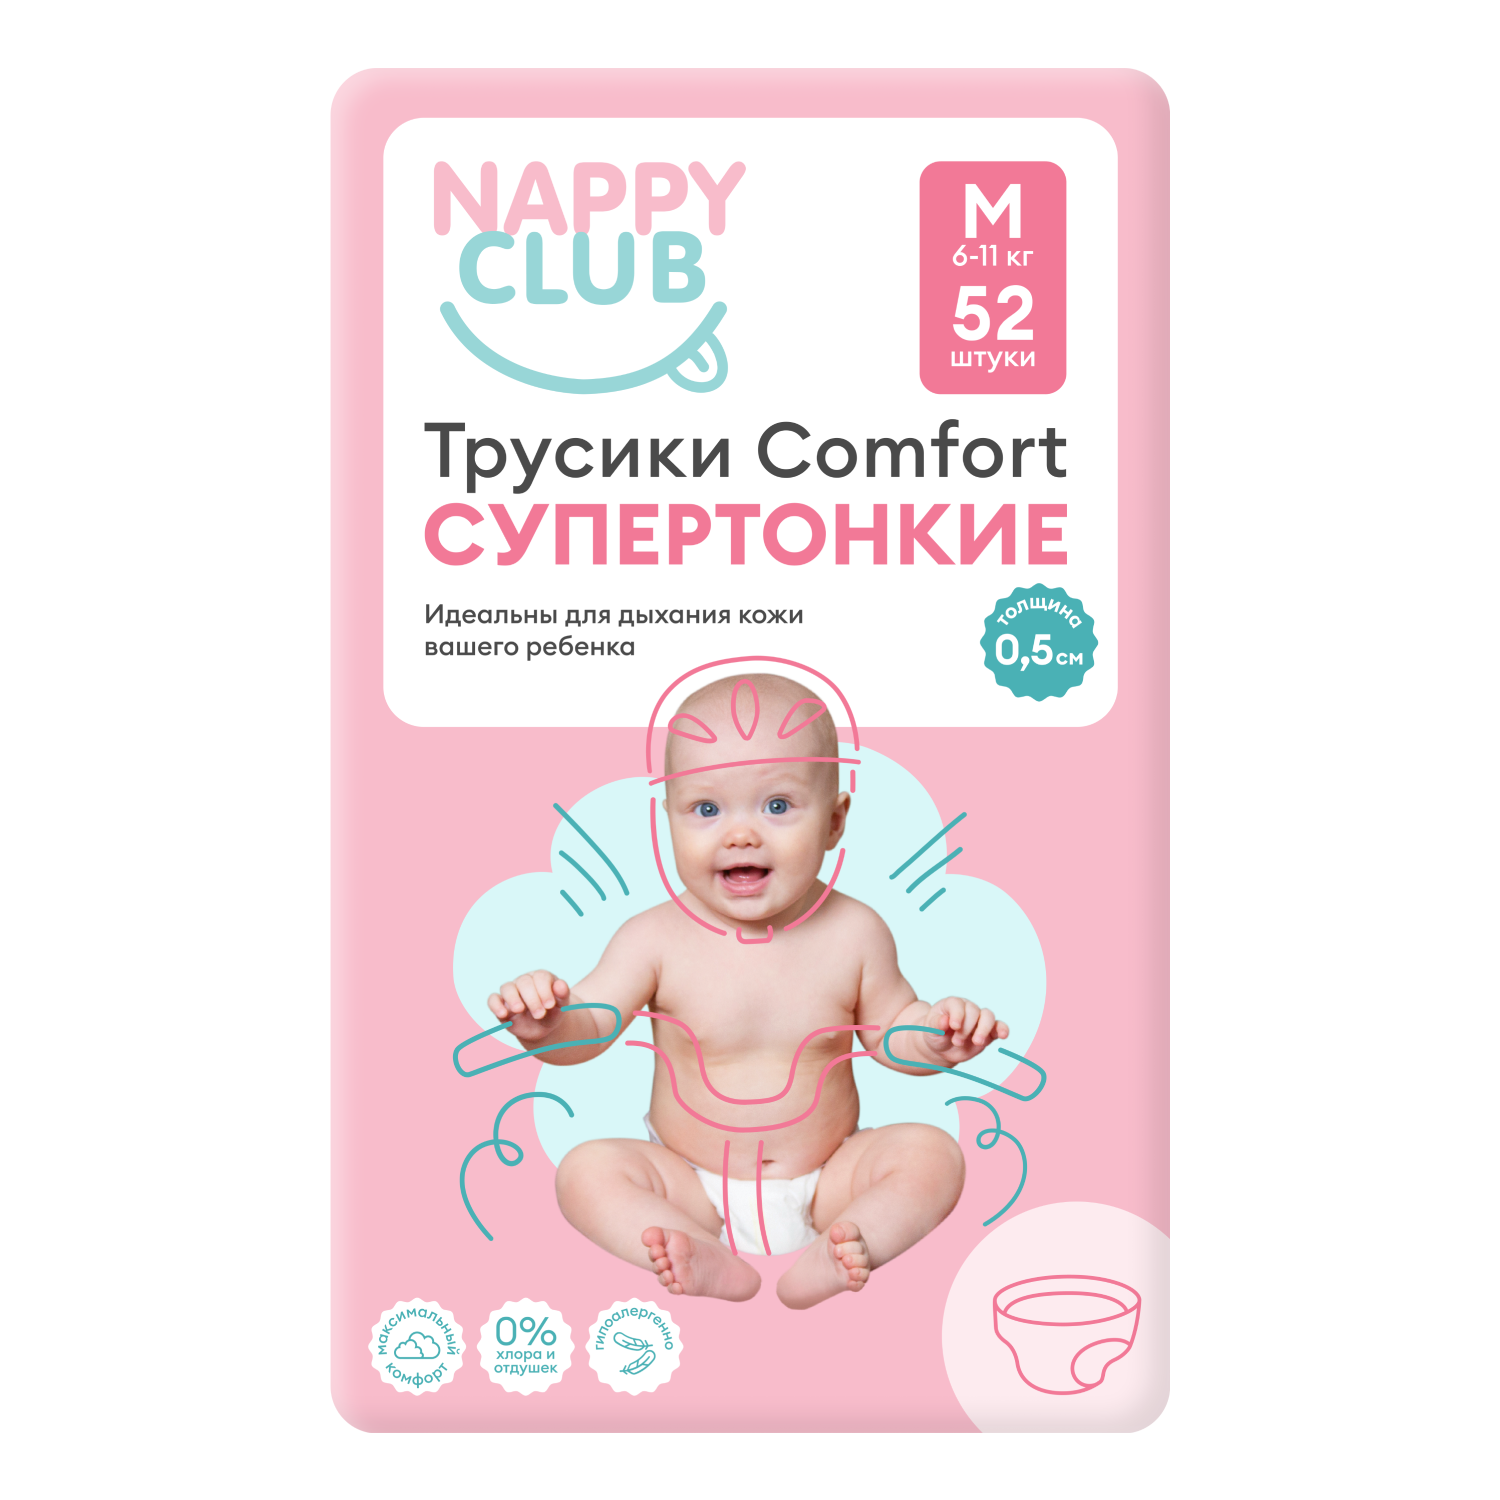 NappyClub трусики Comfort дневные супер-тонкие M (6-11 кг) 52 шт. nappyclub трусики comfort xl 12 20 кг 38 шт